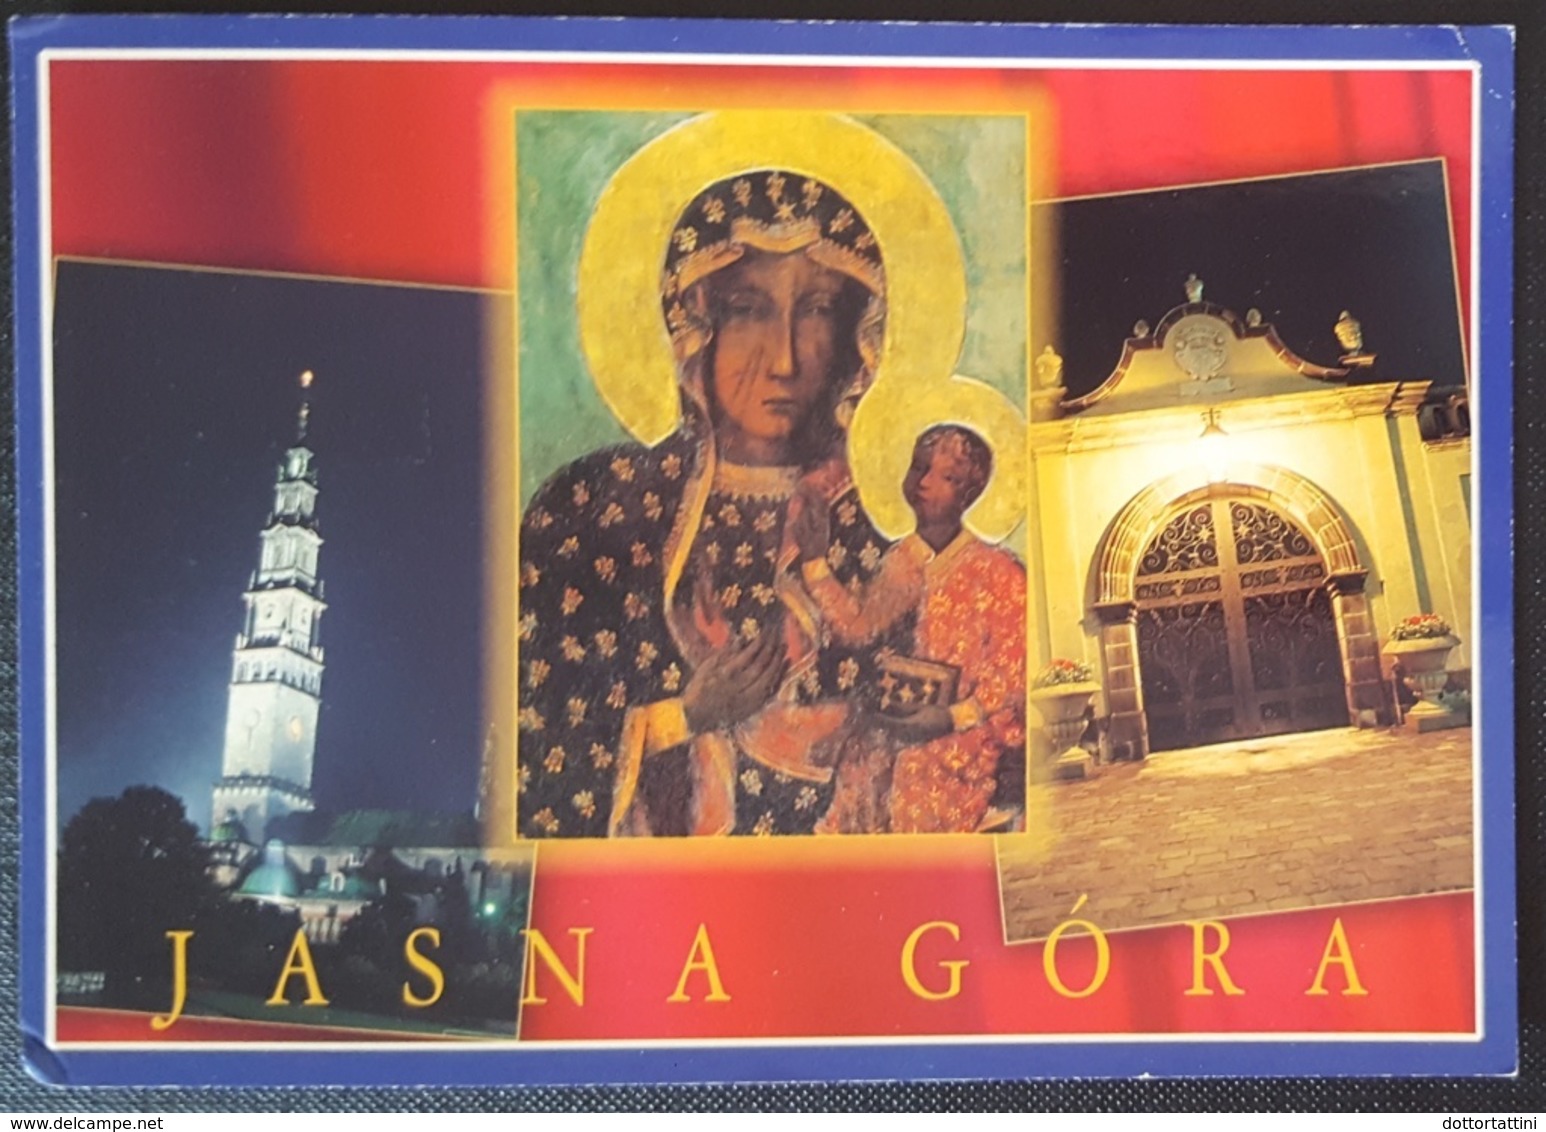 JASNA GORA - CZESTOCHOWA - Poland - Polonia